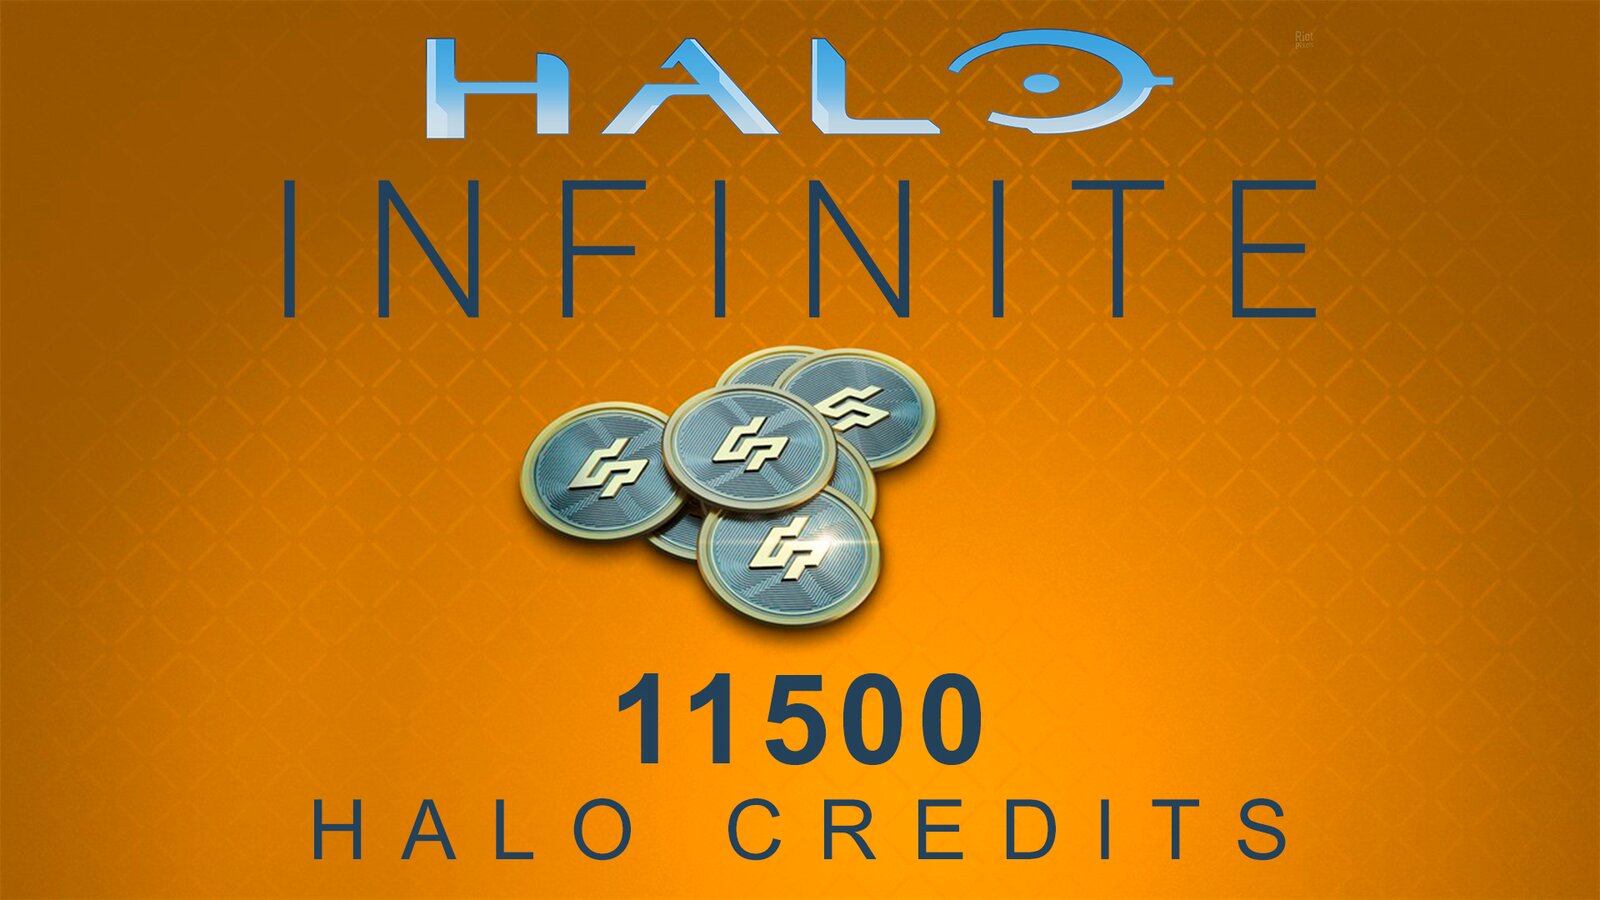 Halo Infinite - 11500 Halo Credits